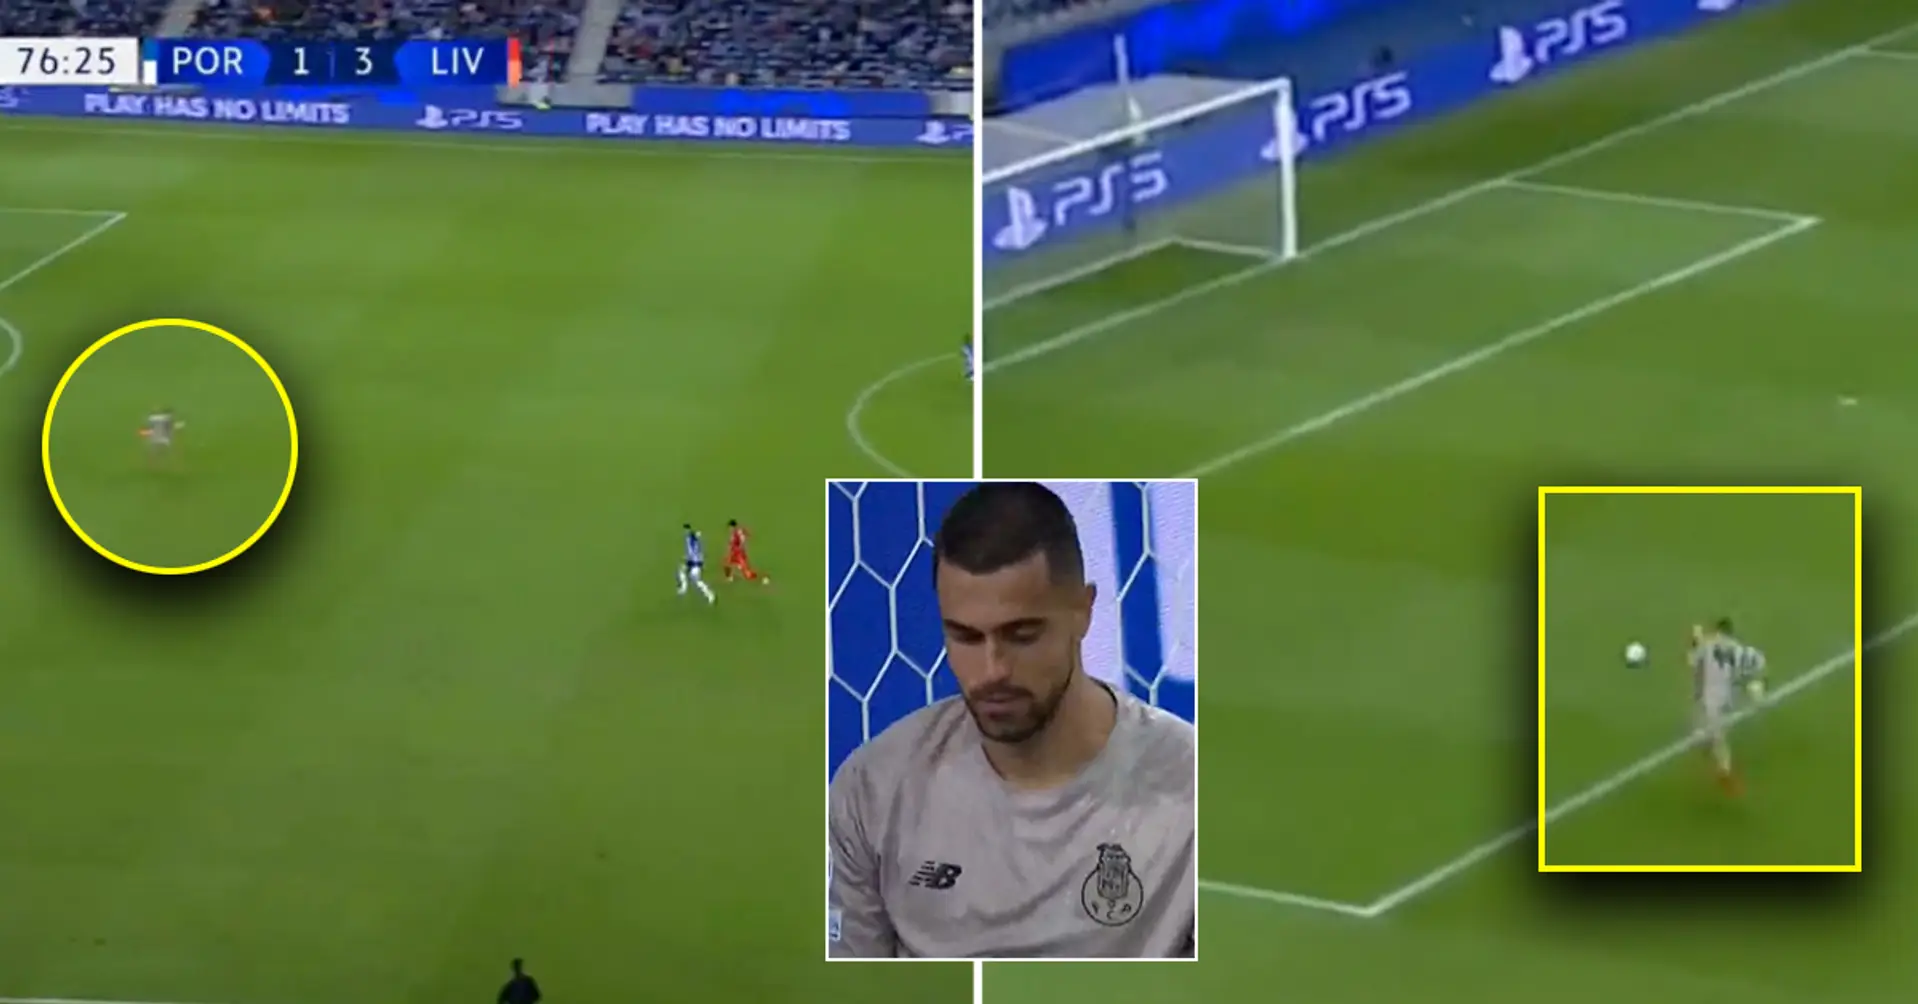 Déchirant: le gardien de Porto a couru pendant 5 secondes en essayant d'attraper le ballon devant un but vide